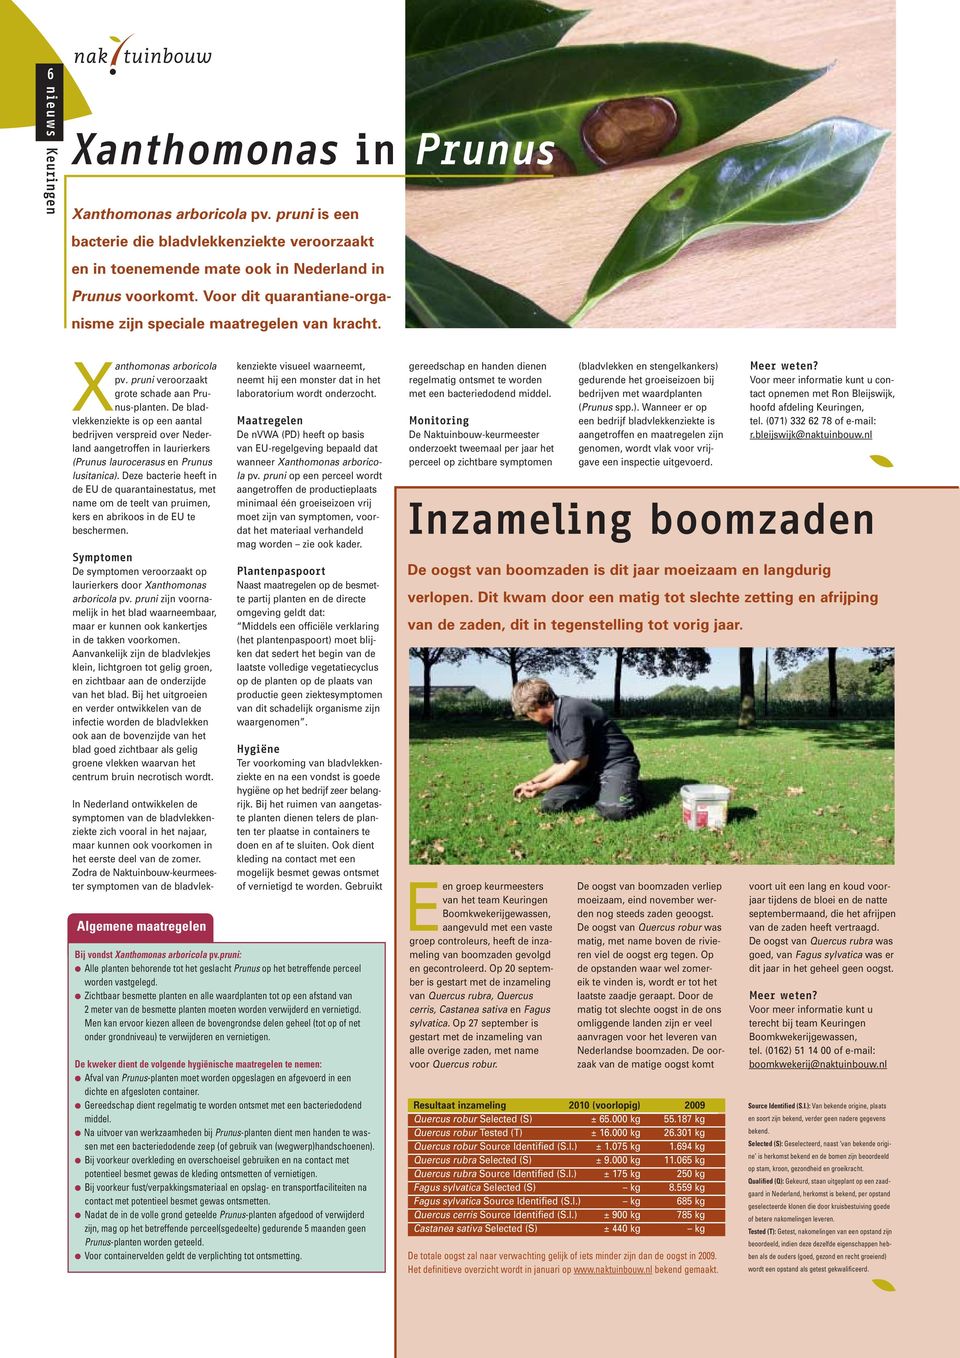 De bladvlekkenziekte is op een aantal bedrijven verspreid over Nederland aangetroffen in laurierkers (Prunus laurocerasus en Prunus lusitanica).